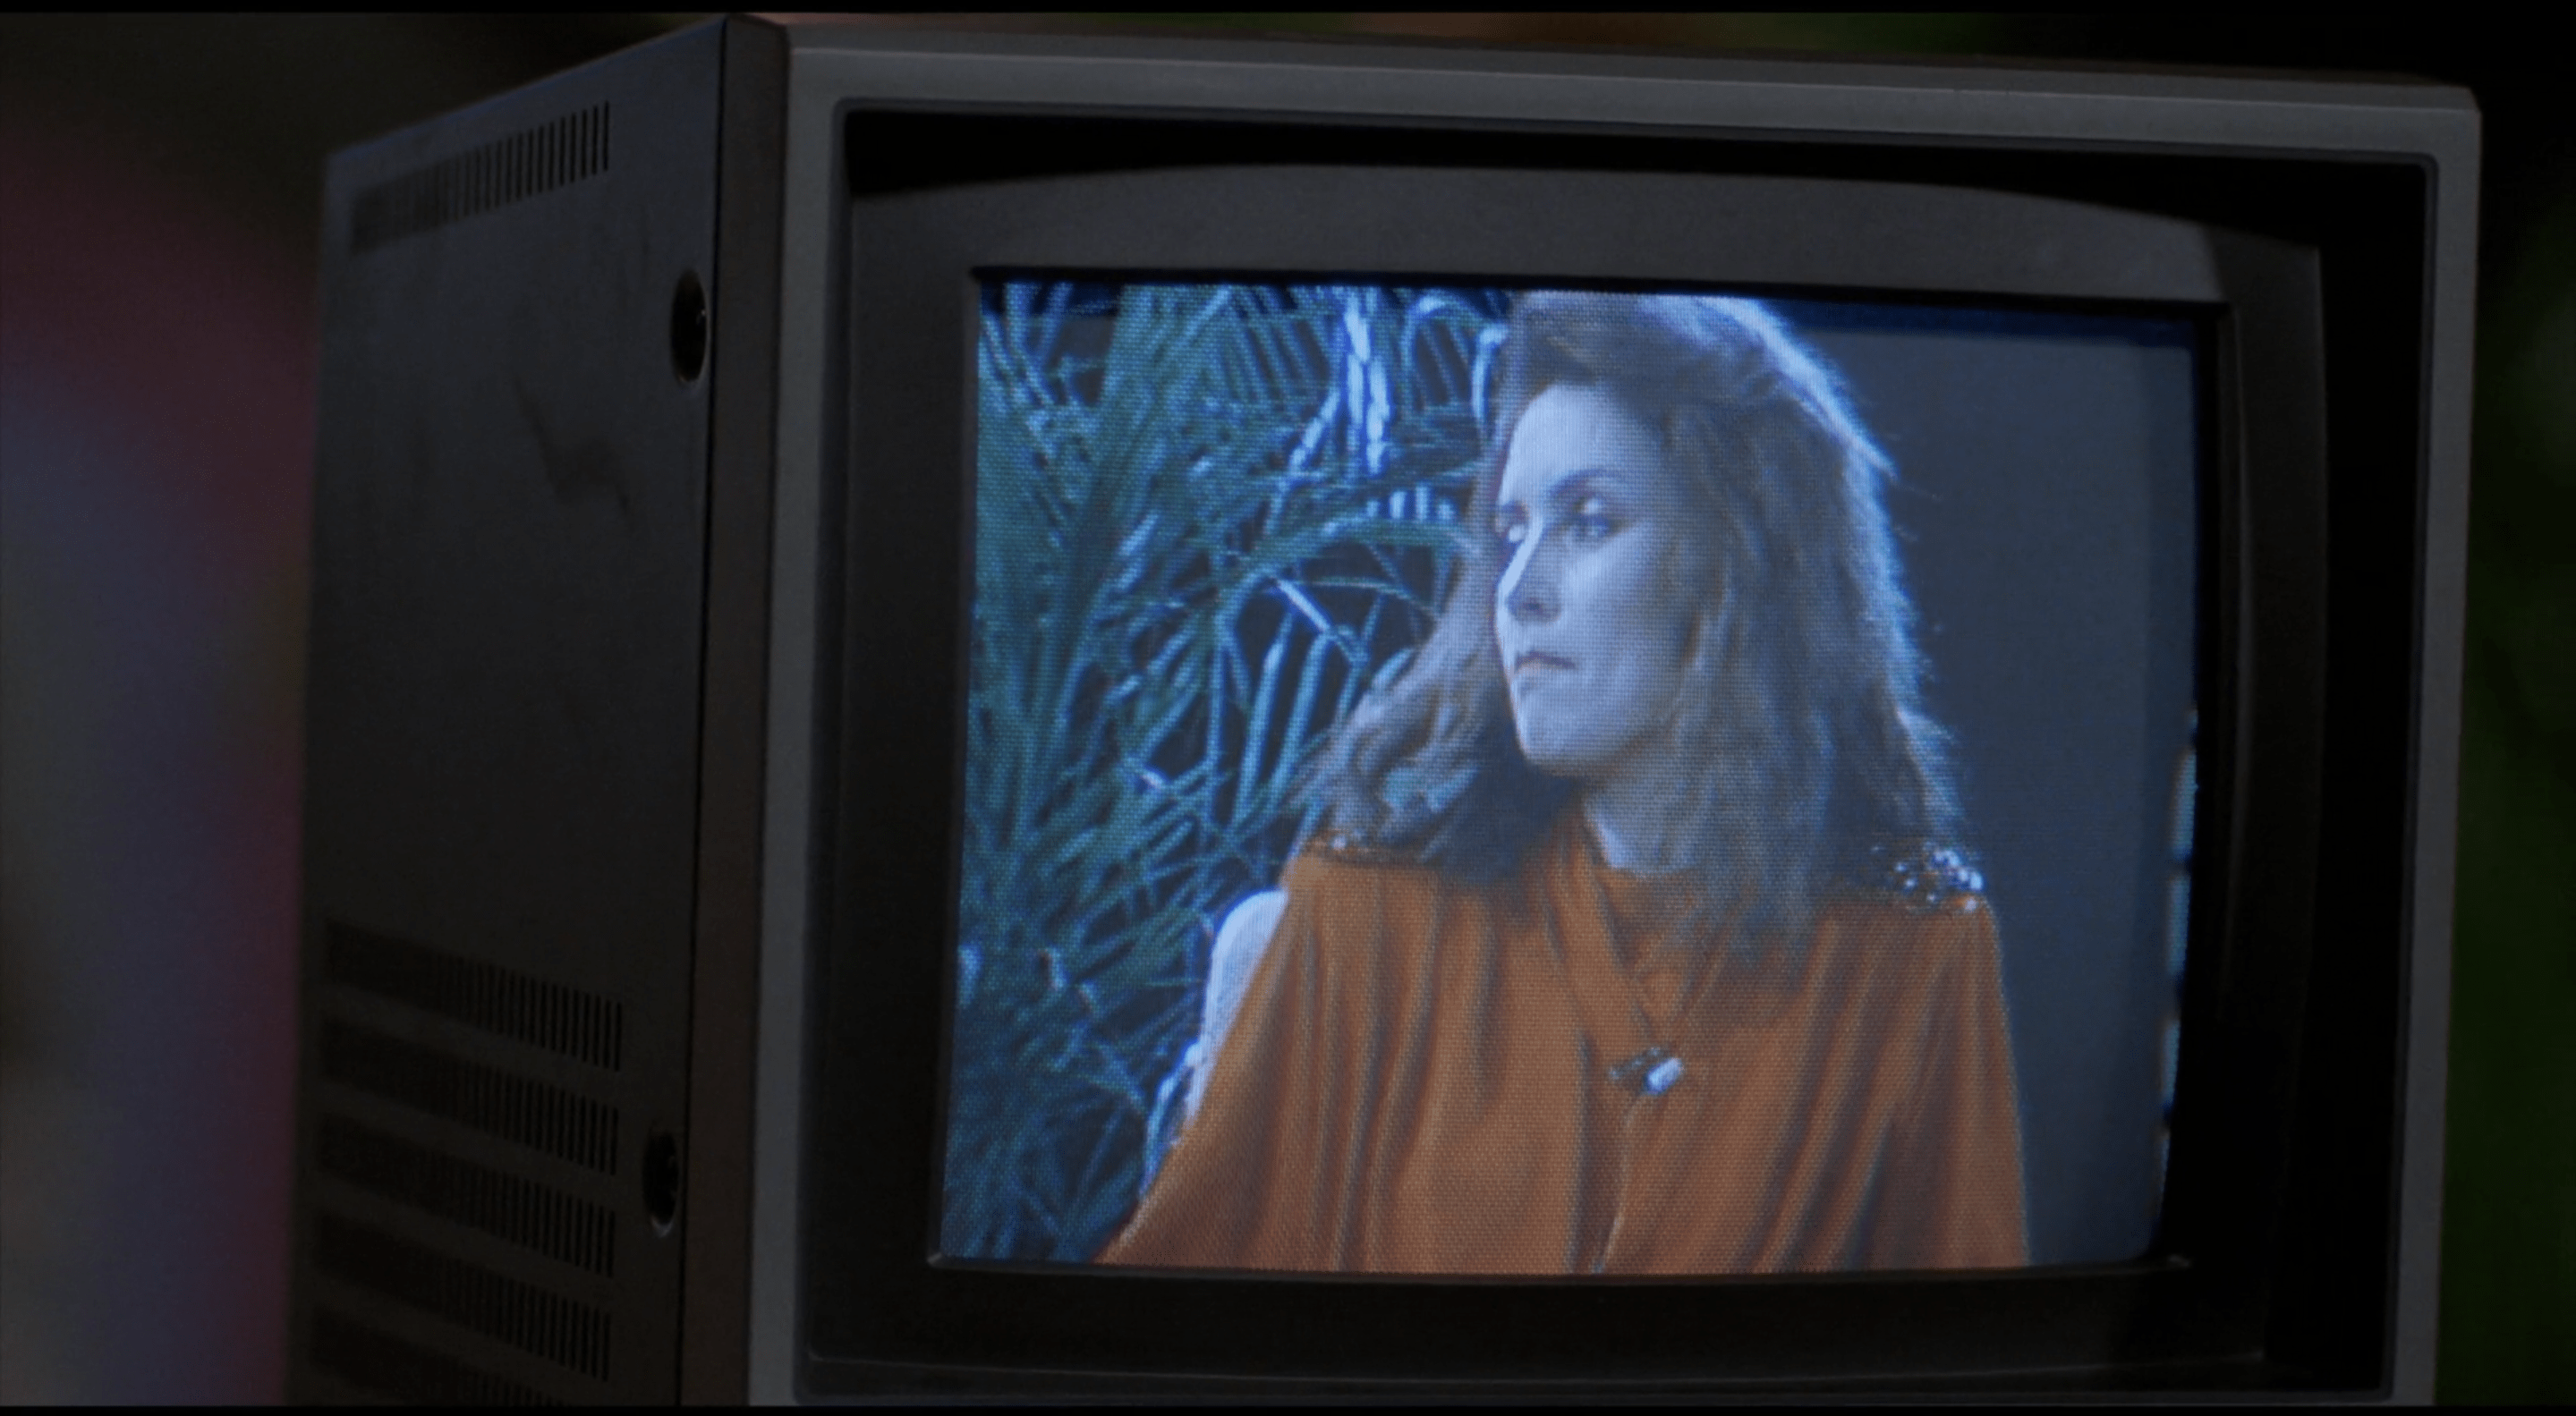 Debbie Harry on a TV screen